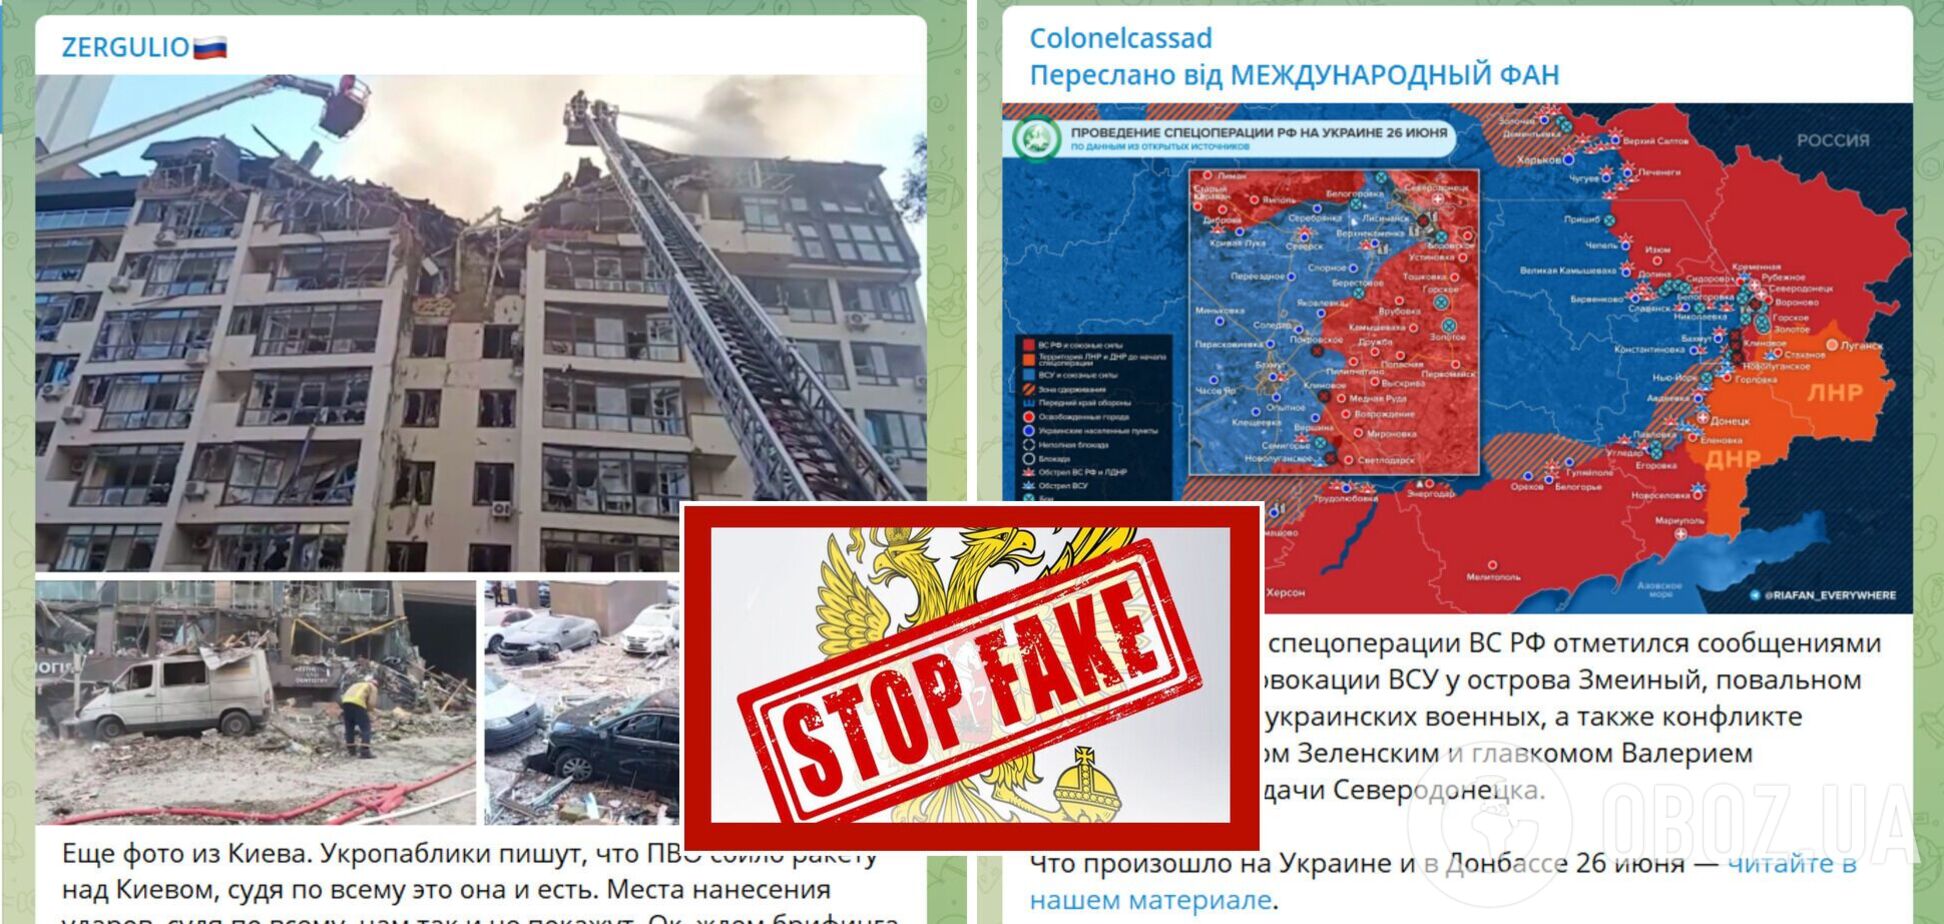 Угрозы террором защитникам Украины и 'самообстрел' Киева. О чем говорила кремлевская пропаганда в Telegram